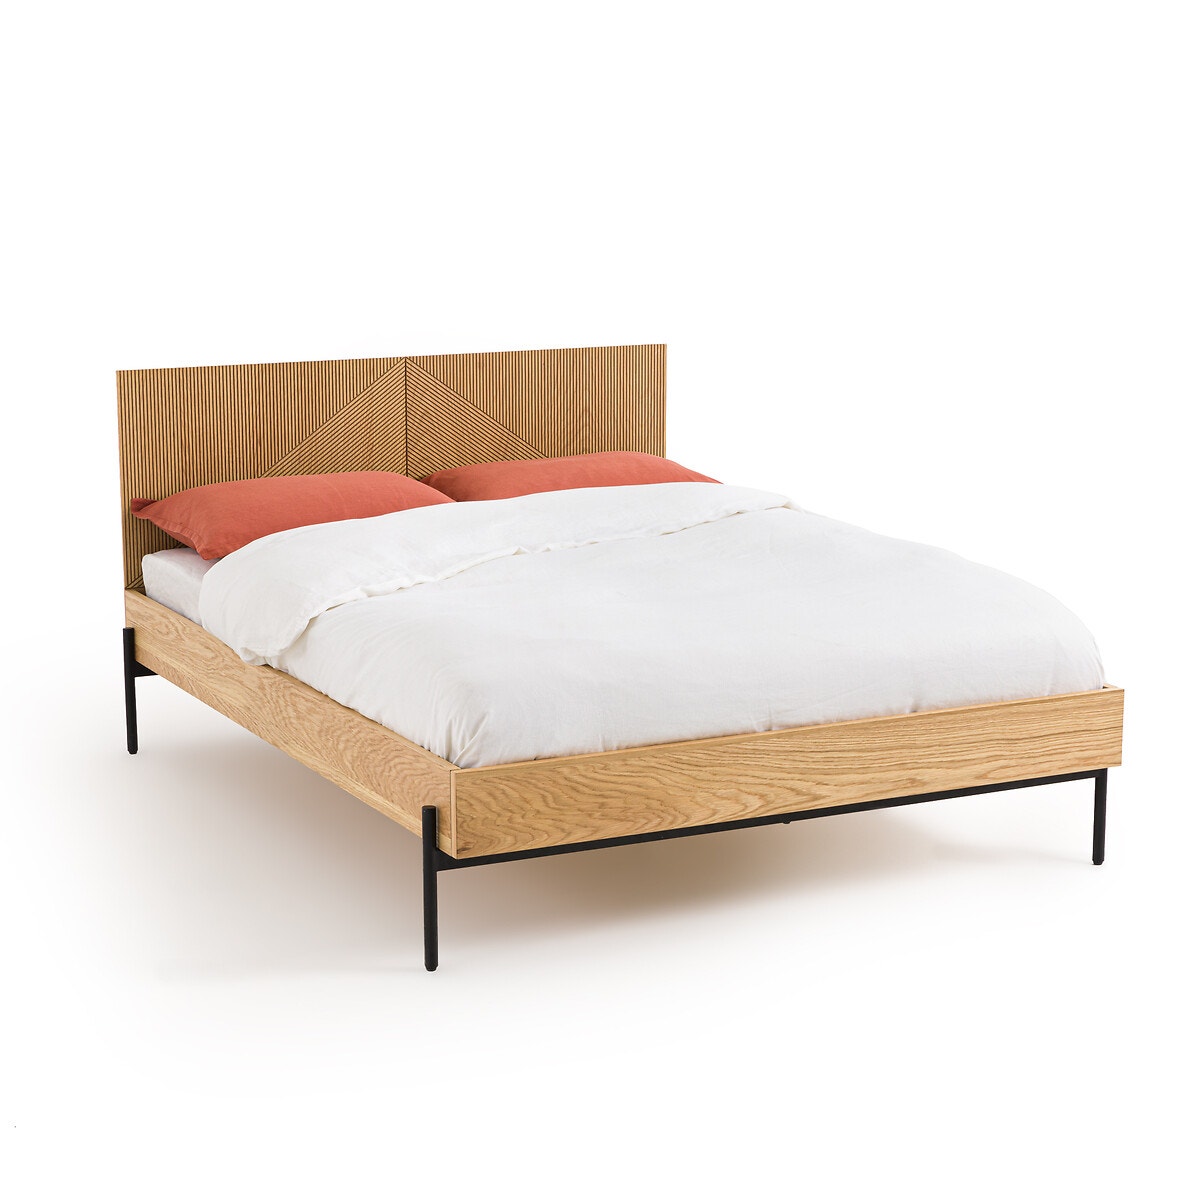 Σπίτι > Έπιπλα > Υπνοδωμάτιο > Κρεβάτια Κρεβάτι με τάβλες από ανοιχτόχρωμο ξύλο δρυ Μ292xΠ152xΥ91cm